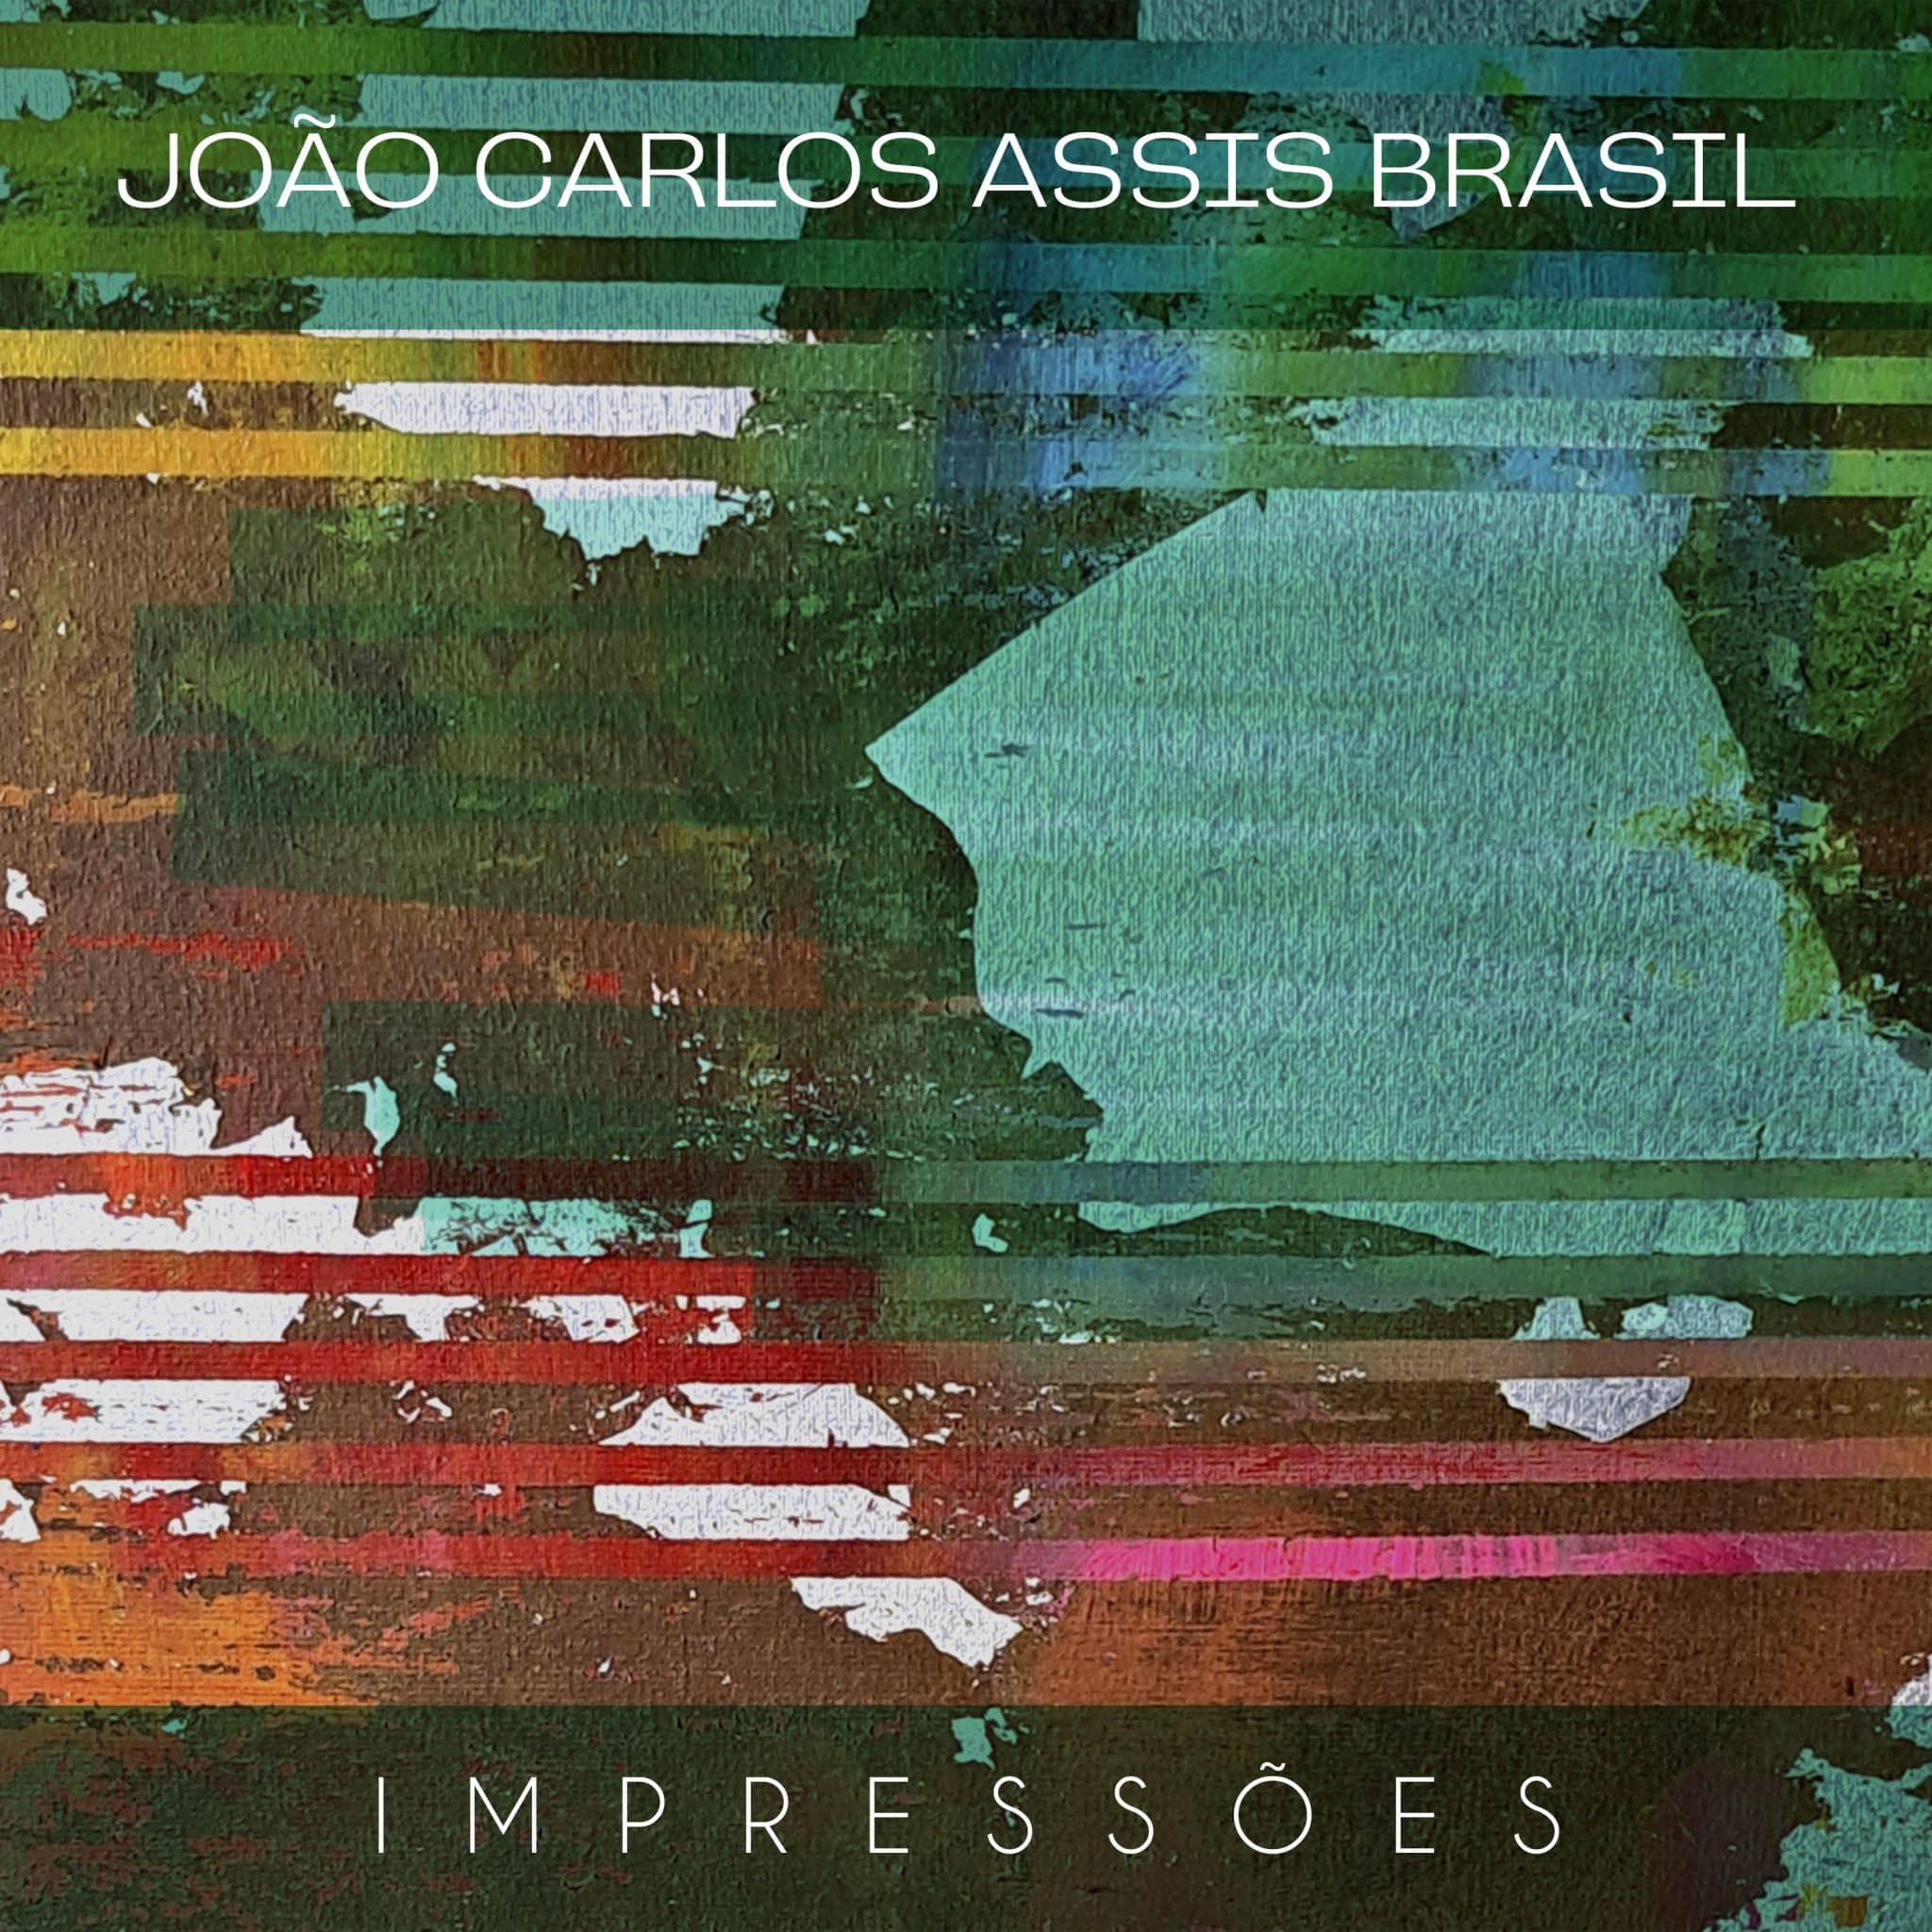 revistaprosaversoearte.com - 'Impressões', álbum com temas inéditos do compositor e pianista João Carlos Assis Brasil